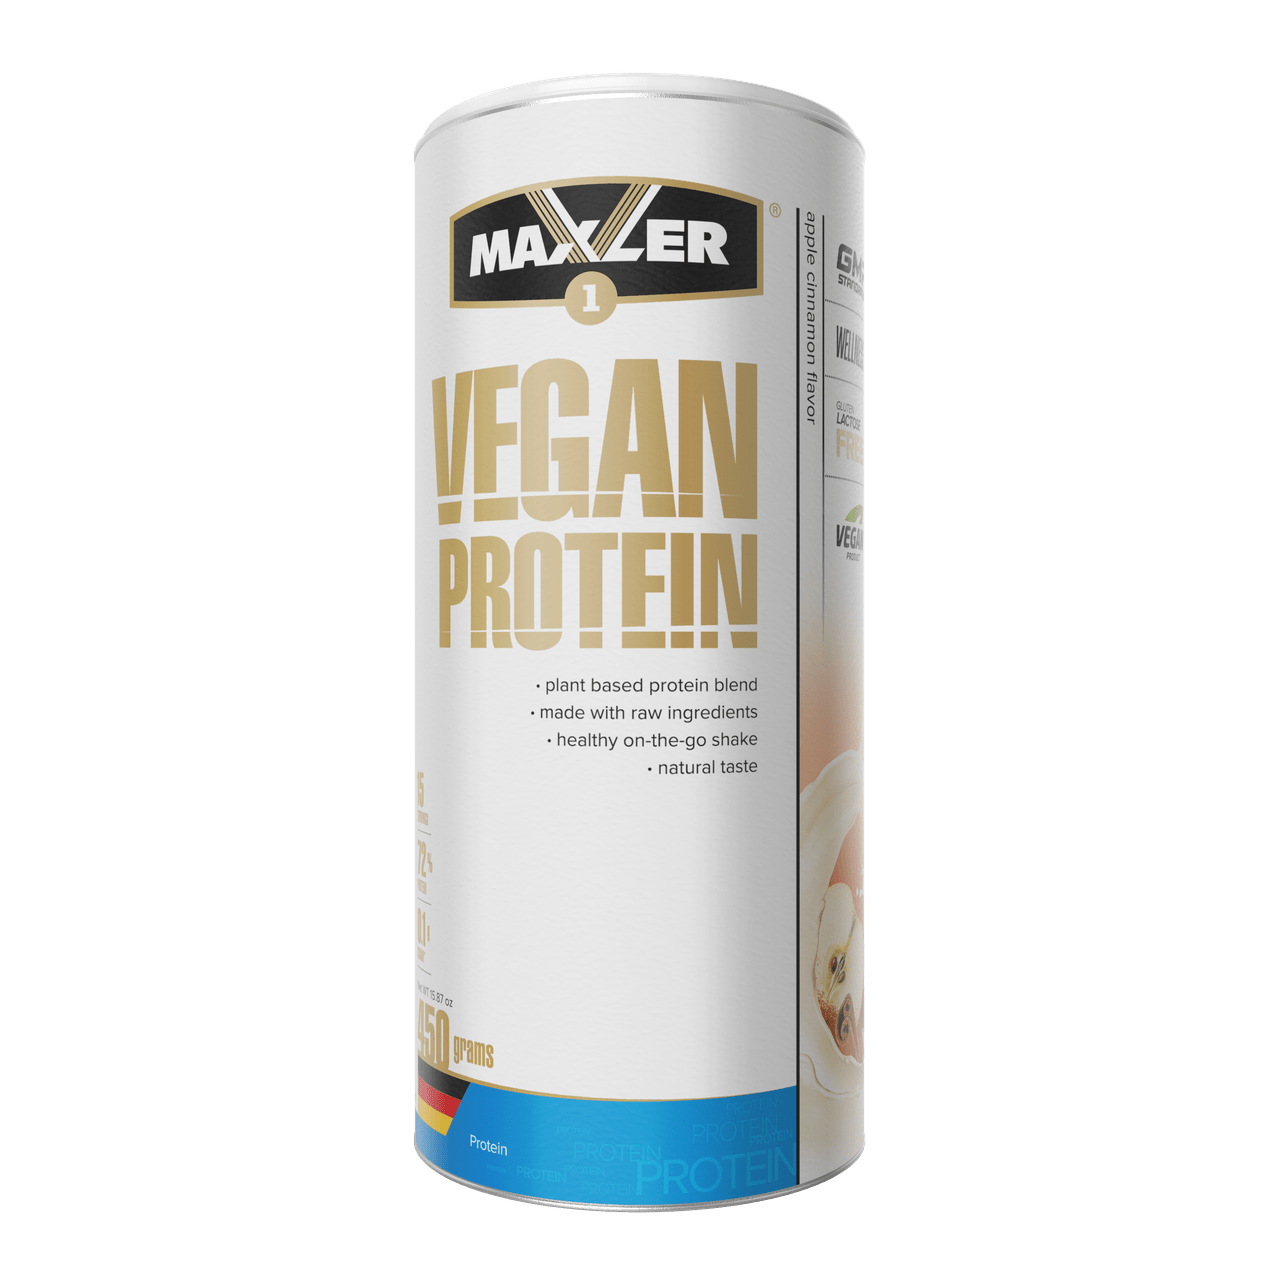 Maxler Vegan Protein 450 г – яблоко с корицей,  мл, Maxler. Растительный протеин. 